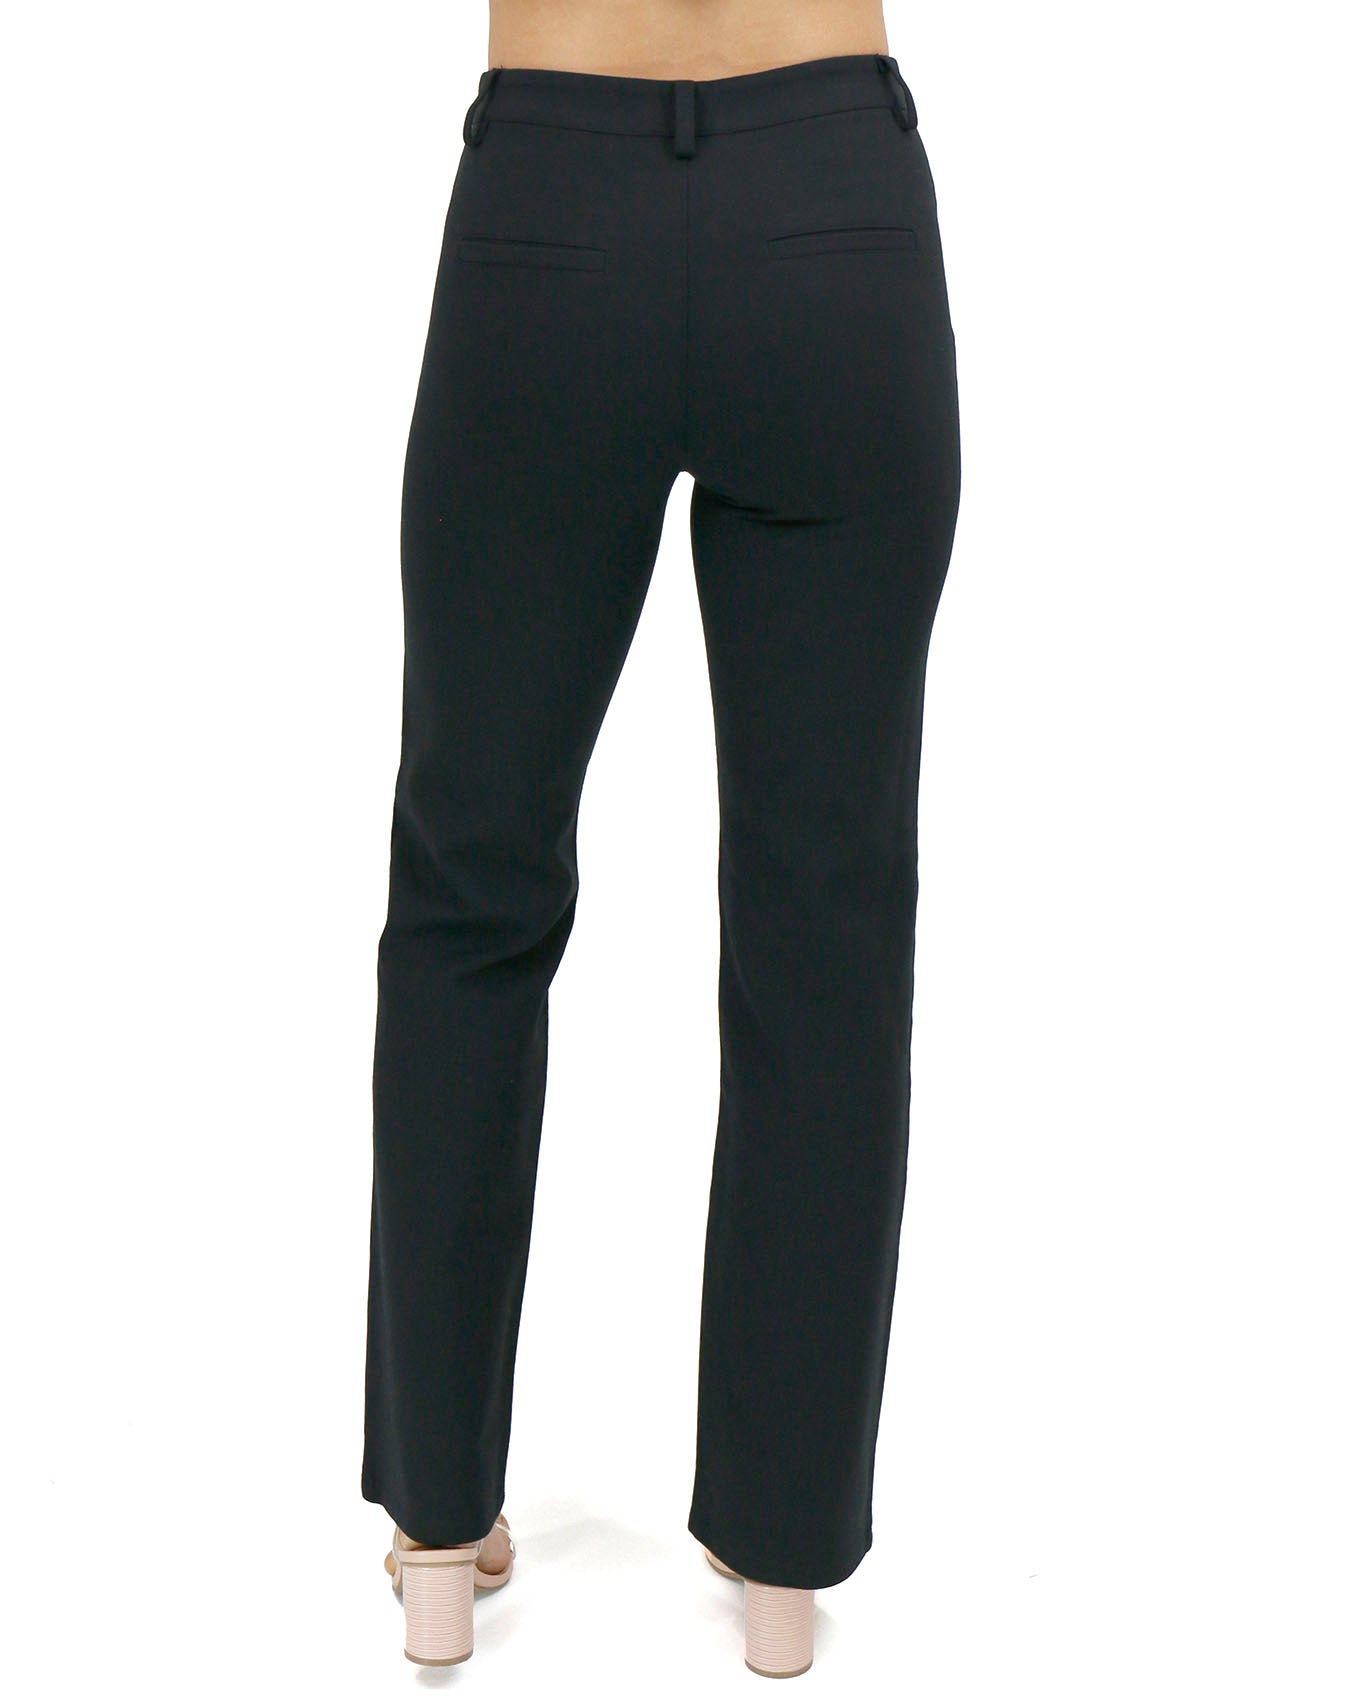 Brilliant Basics Women's Regular Length Straight Work Pant - Black